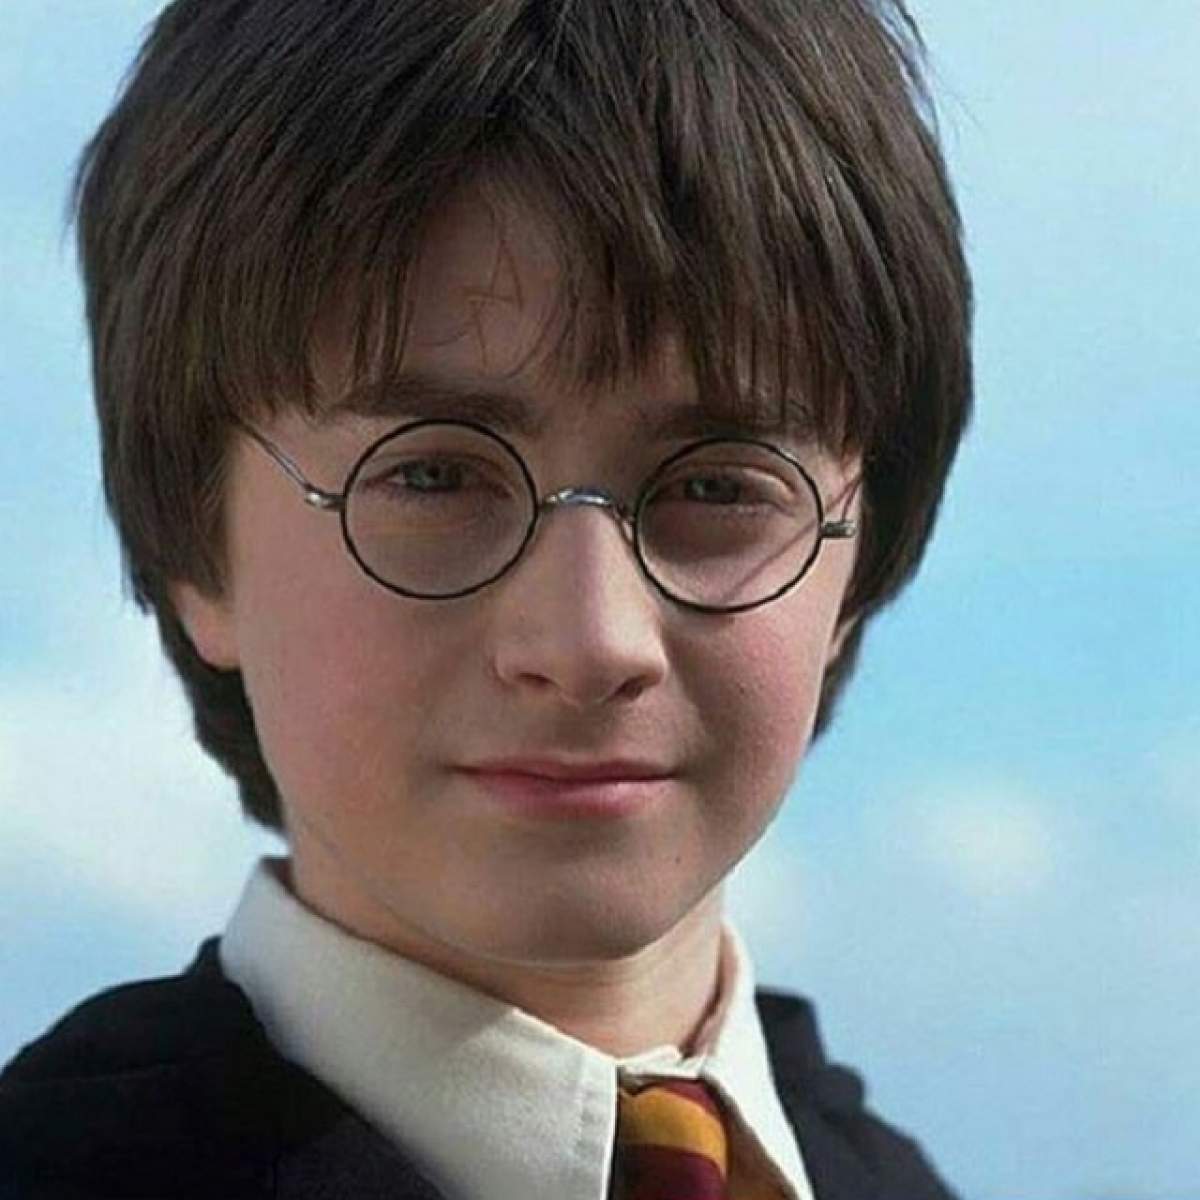 FOTO / Transformare UIMITOARE! Cum arată acum Daniel Radcliffe, actorul care l-a interpretat pe HARRY POTTER